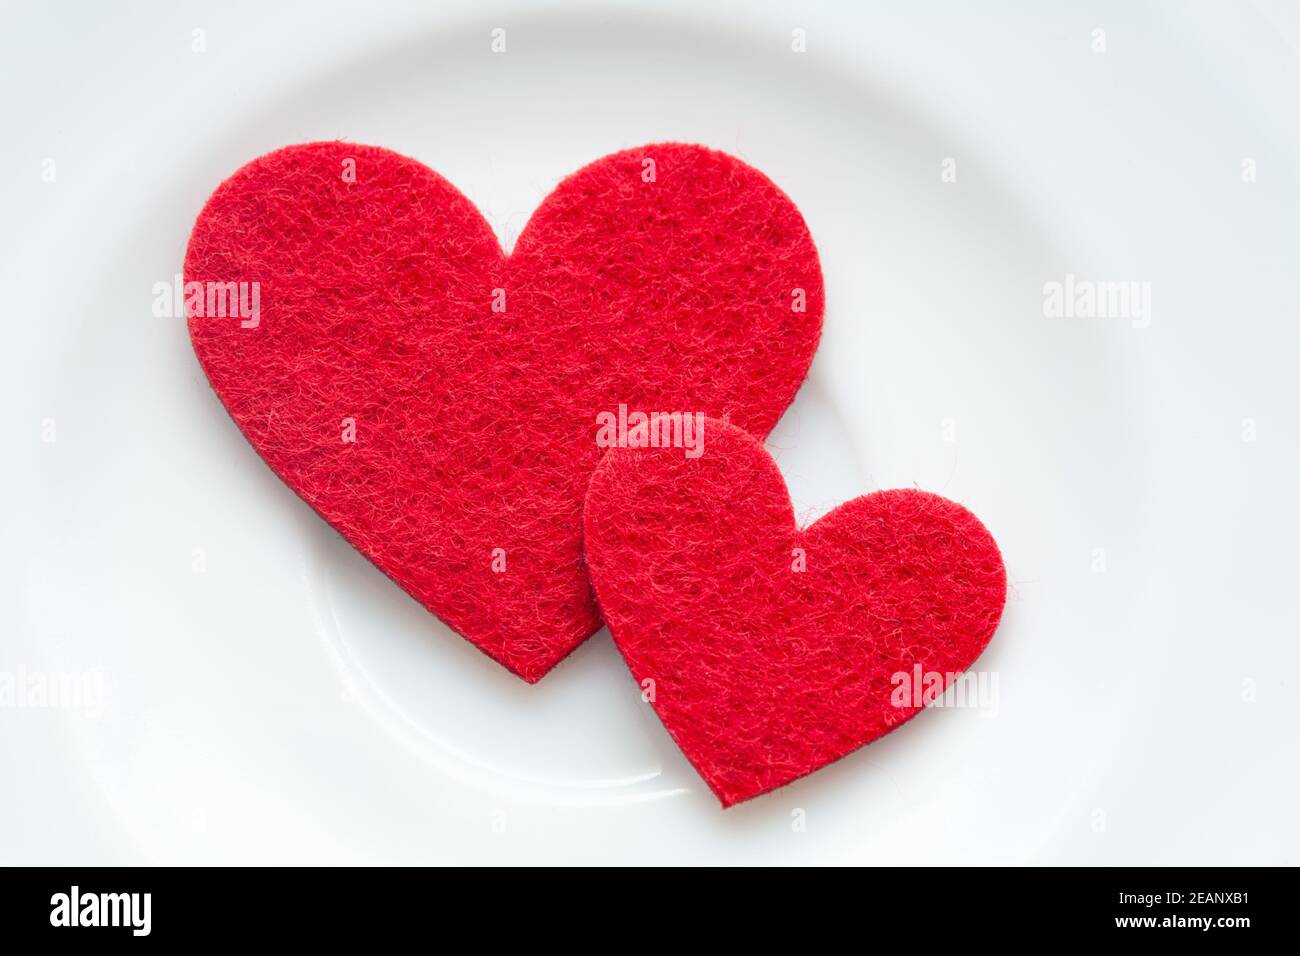 Rote Herzen auf eine Platte Nahaufnahme. Zum Valentinstag Stockfoto